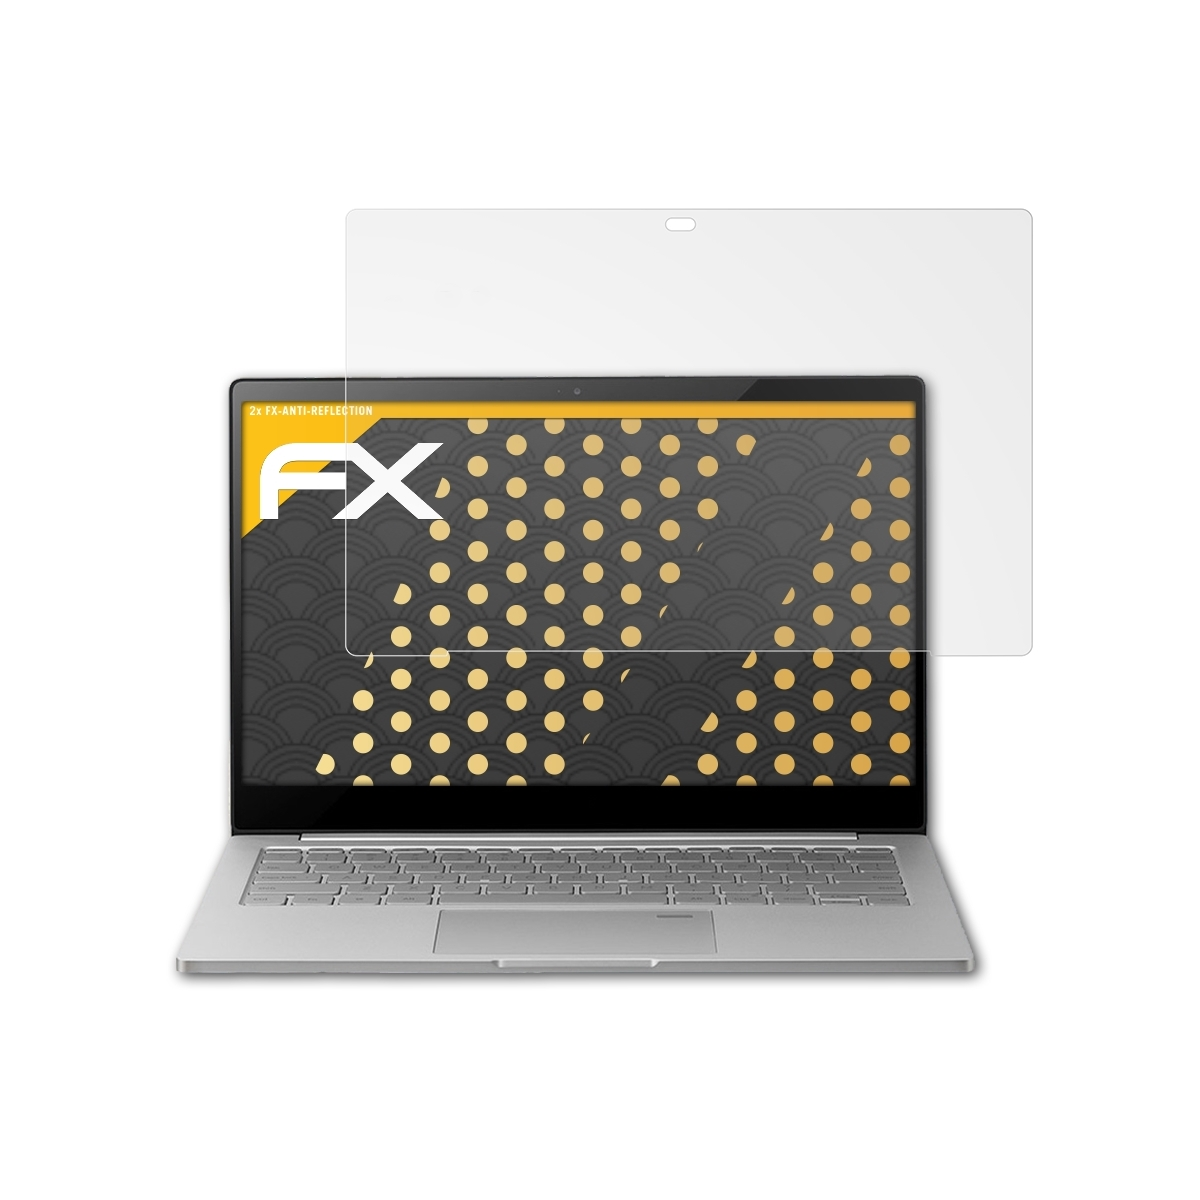 ATFOLIX Xiaomi FX-Antireflex Displayschutz(für Air 13.3 Notebook (2019)) 2x Mi